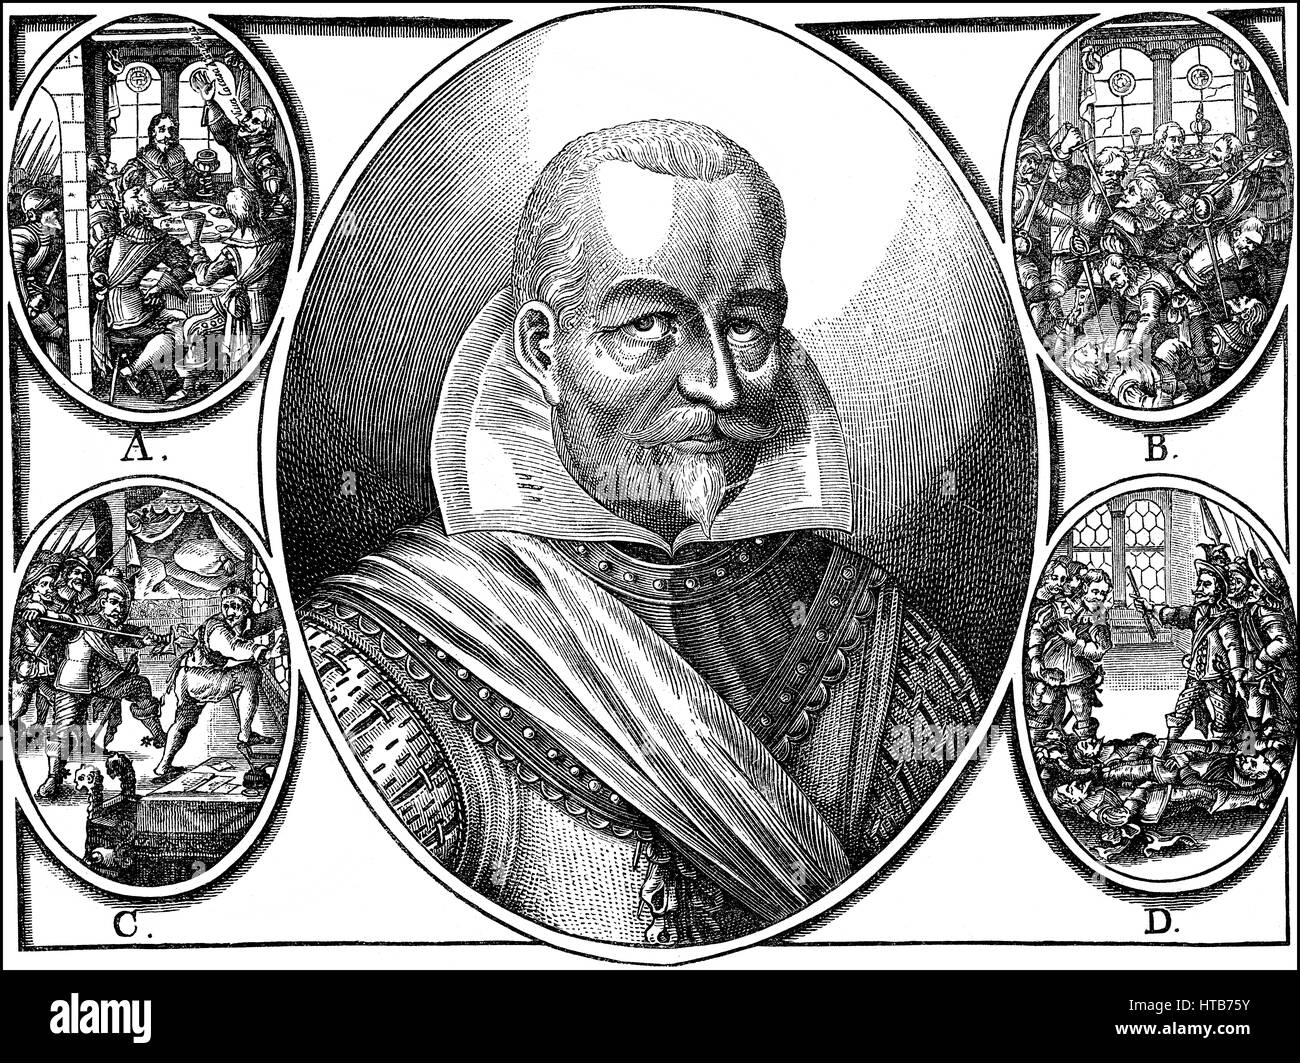 Ermordung von Albrecht von Wallenstein, 1583-1634, Kommandeur der kaiserlichen Truppen im Dreißigjährigen Krieg Stockfoto